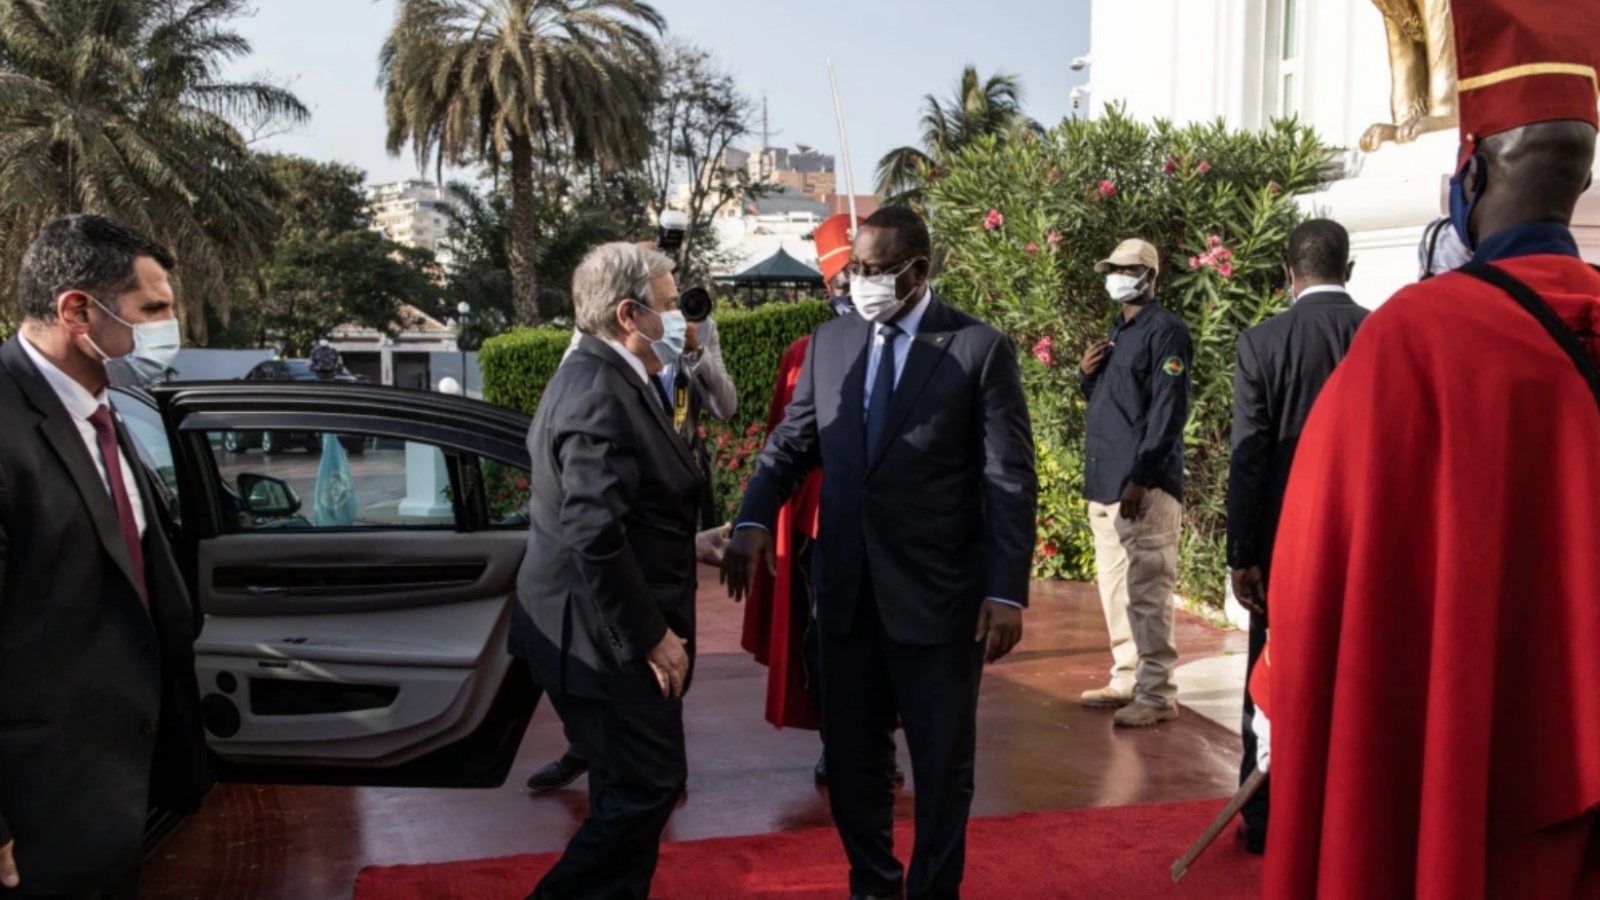 الرئيس السنغالي ماكي سال، وسط الصورة، يحيي الأمين العام للأمم المتحدة أنطونيو غوتيريش، إلى اليسار، لدى وصوله إلى القصر الرئاسي خلال جولته في غرب أفريقيا، في داكار، 1 مايو 2022.